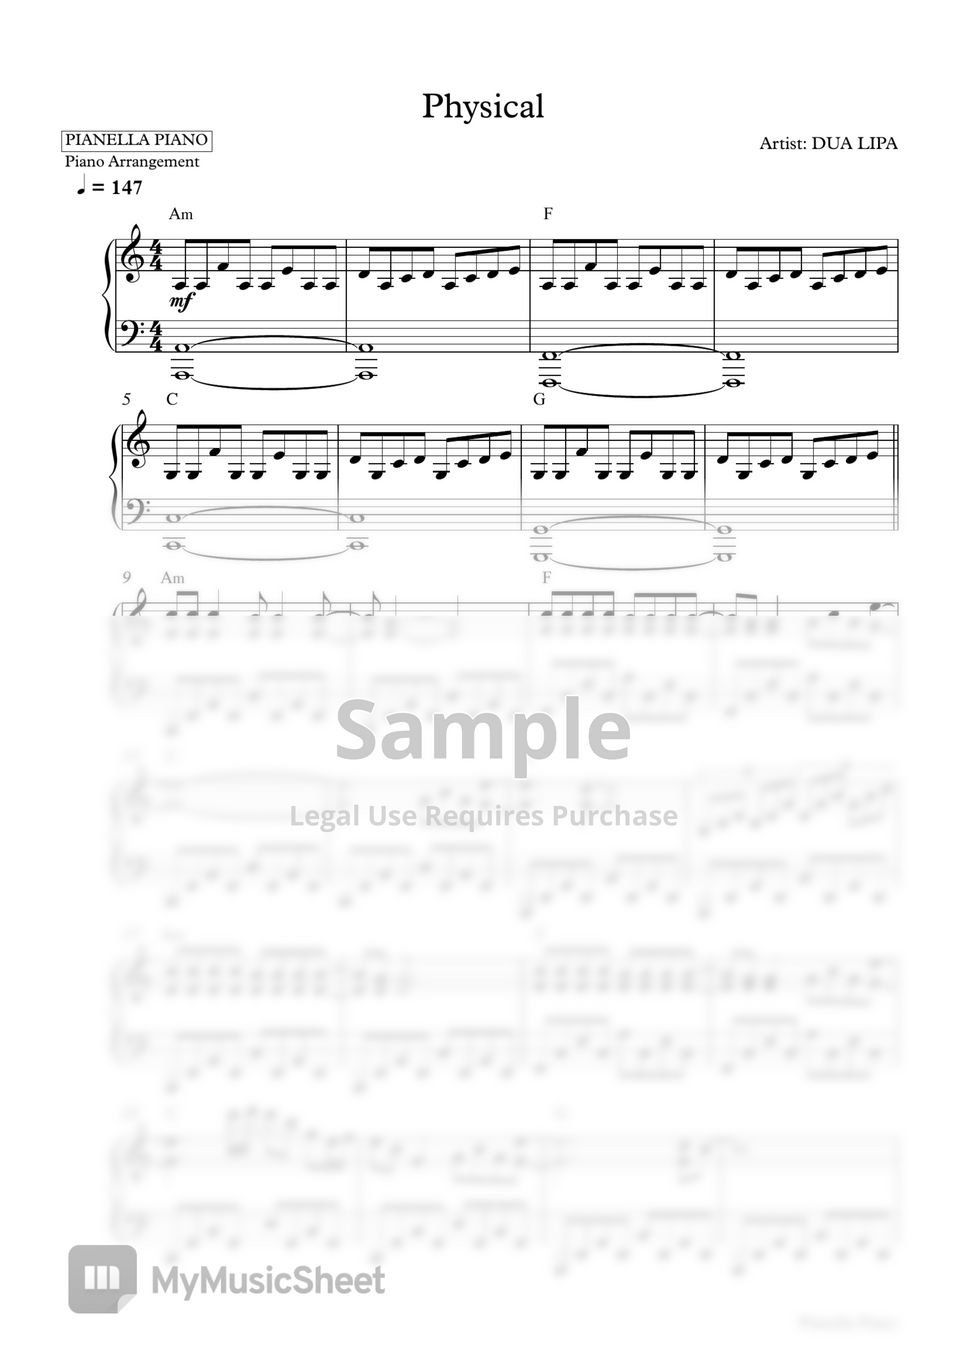 DUA LIPA - Physical (Piano Sheet) by Pianella Piano